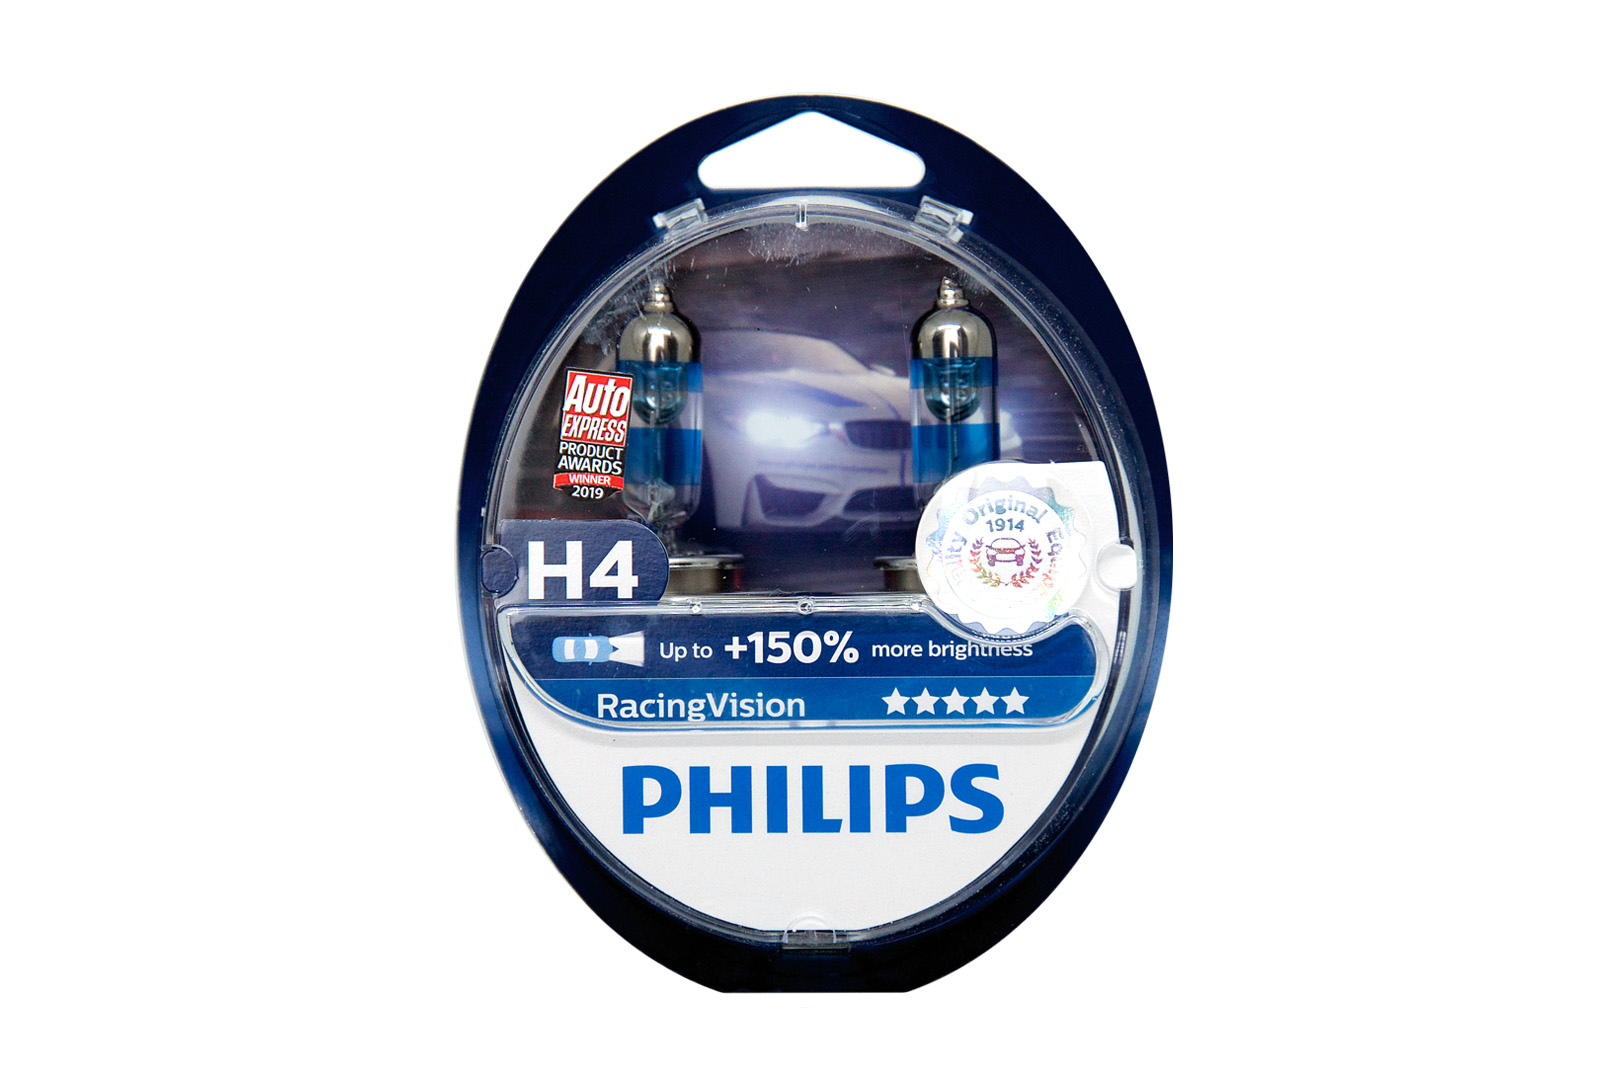 Филипс 150. Philips h4 +150. Лампы h4 Philips +150. Галогенная лампа Philips h4 +150. Philips Racing Vision +150 h4.